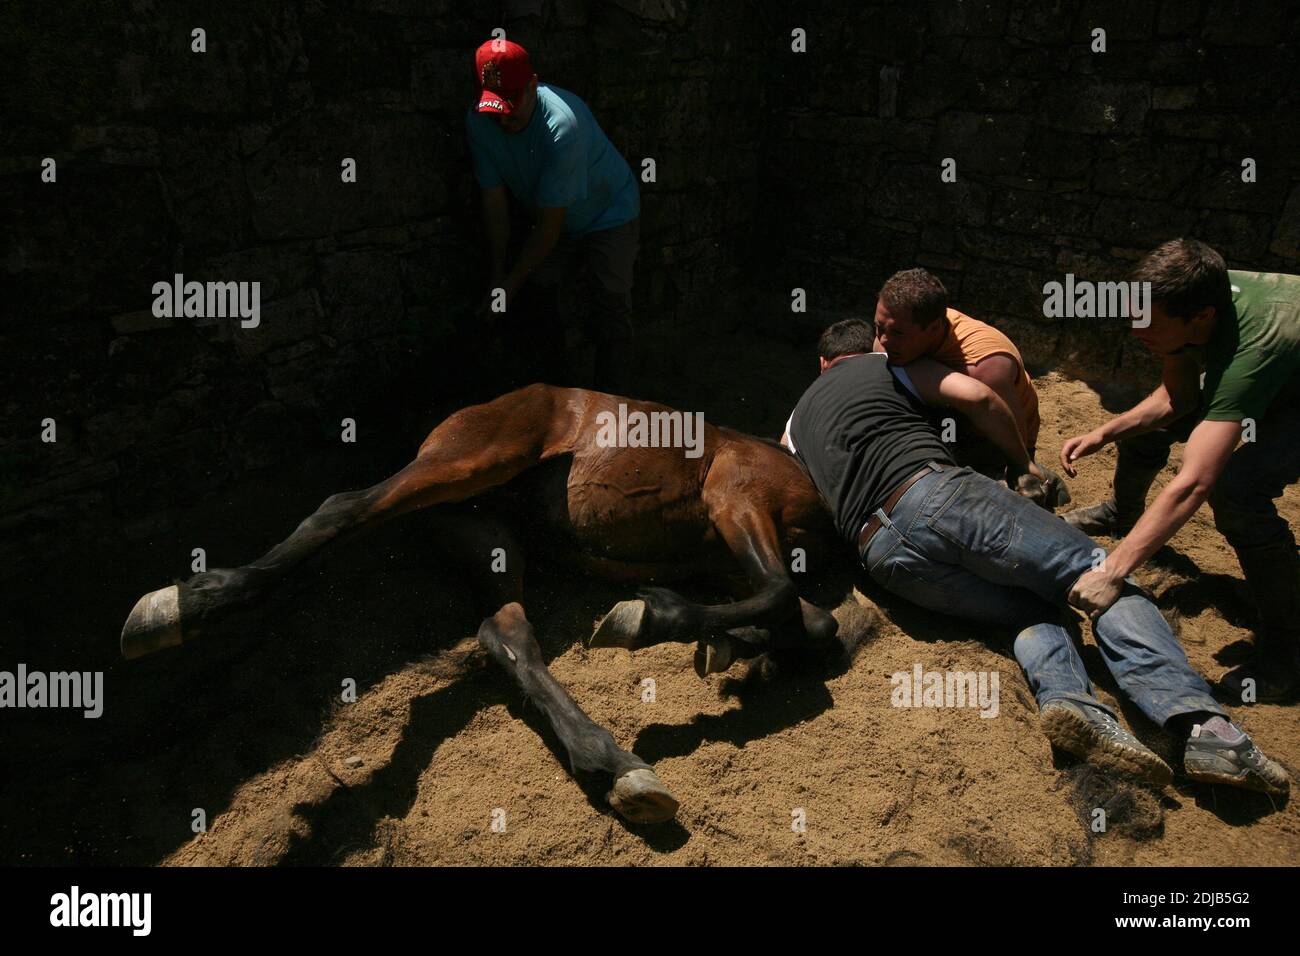 Galizische Aloitadores (Pferdemaher) kämpfen mit einem ungebrochenen Pferd während der Rapa das Bestas im Dorf Sabucedo in Galicien, Spanien. Galizische Pferde leben das ganze Jahr über frei auf den Almen des Hochlandes. Eines Tages im Juli werden sechshundert Pferde zusammen in das Dorf gefahren, wo das traditionelle Pferdehaltung Festival, bekannt als die Rapa das Bestas (Shearing of the Beasts), in der runden Arena, die als curro bekannt ist, stattfindet. Tapfere lokale Kämpfer, die als Aloitadores bekannt sind, müssen jedes Pferd satteln, nach der plötzlichen Vertreibung aus dem Hochland in die Arena verführt, und dann ihr ta schneiden Stockfoto